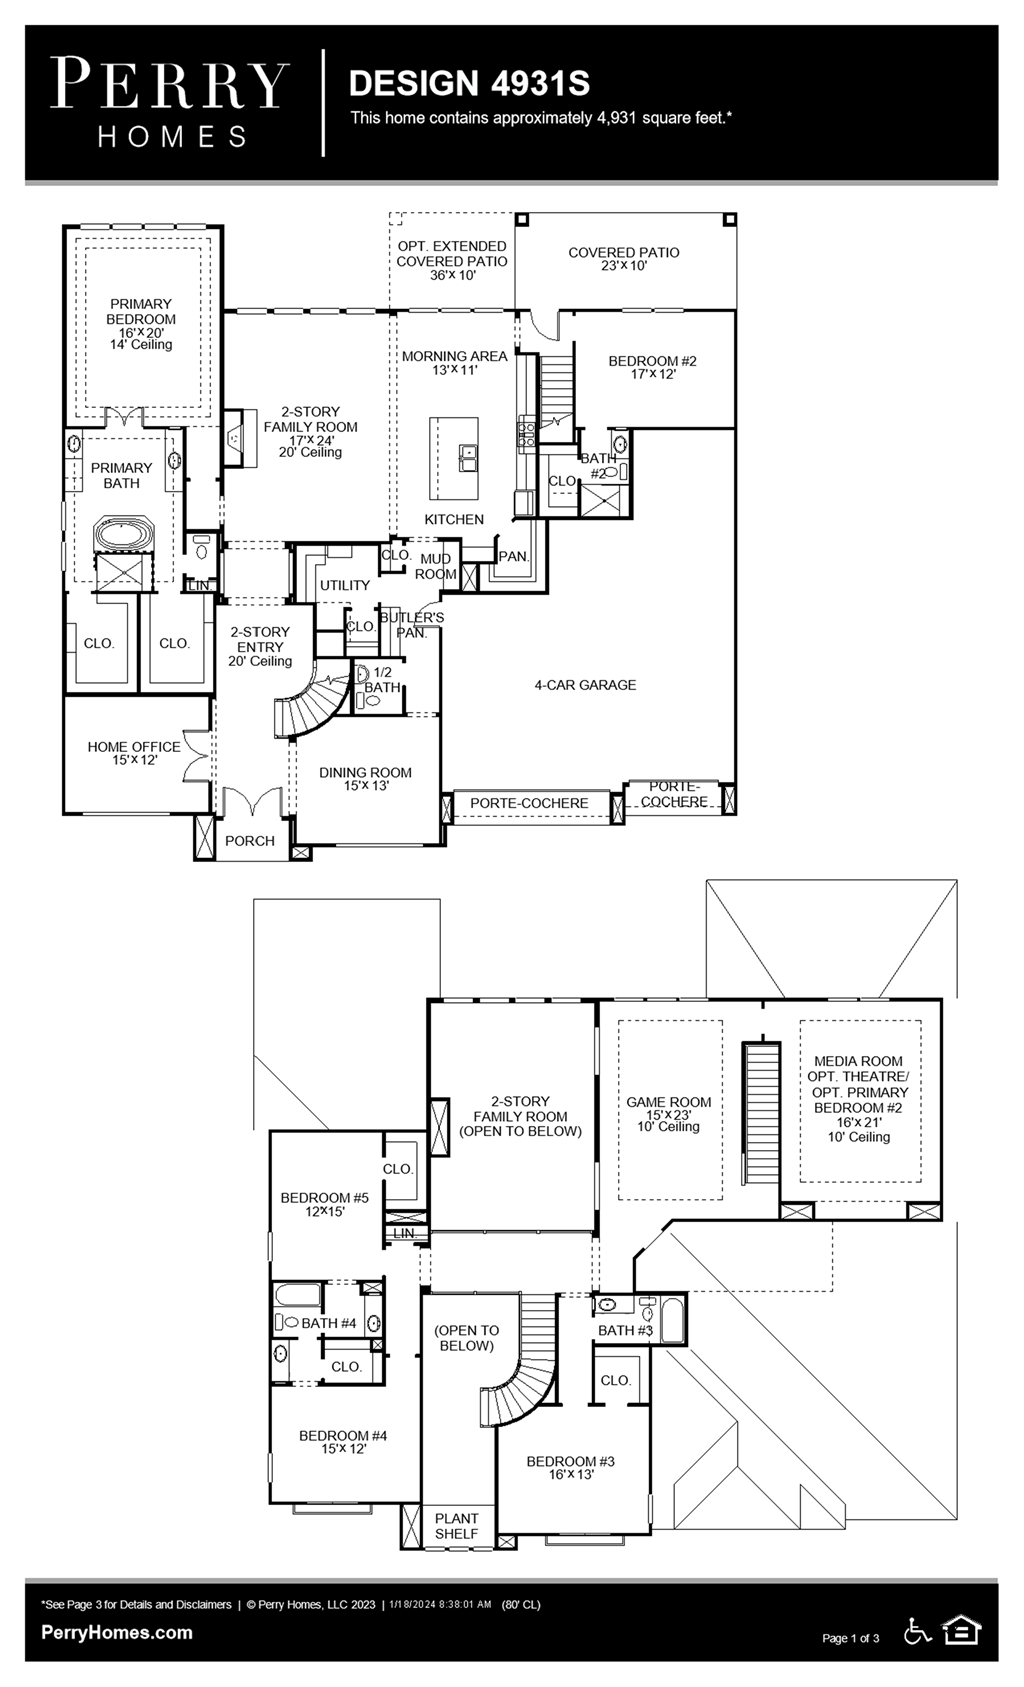 Floor Plan for 4931S